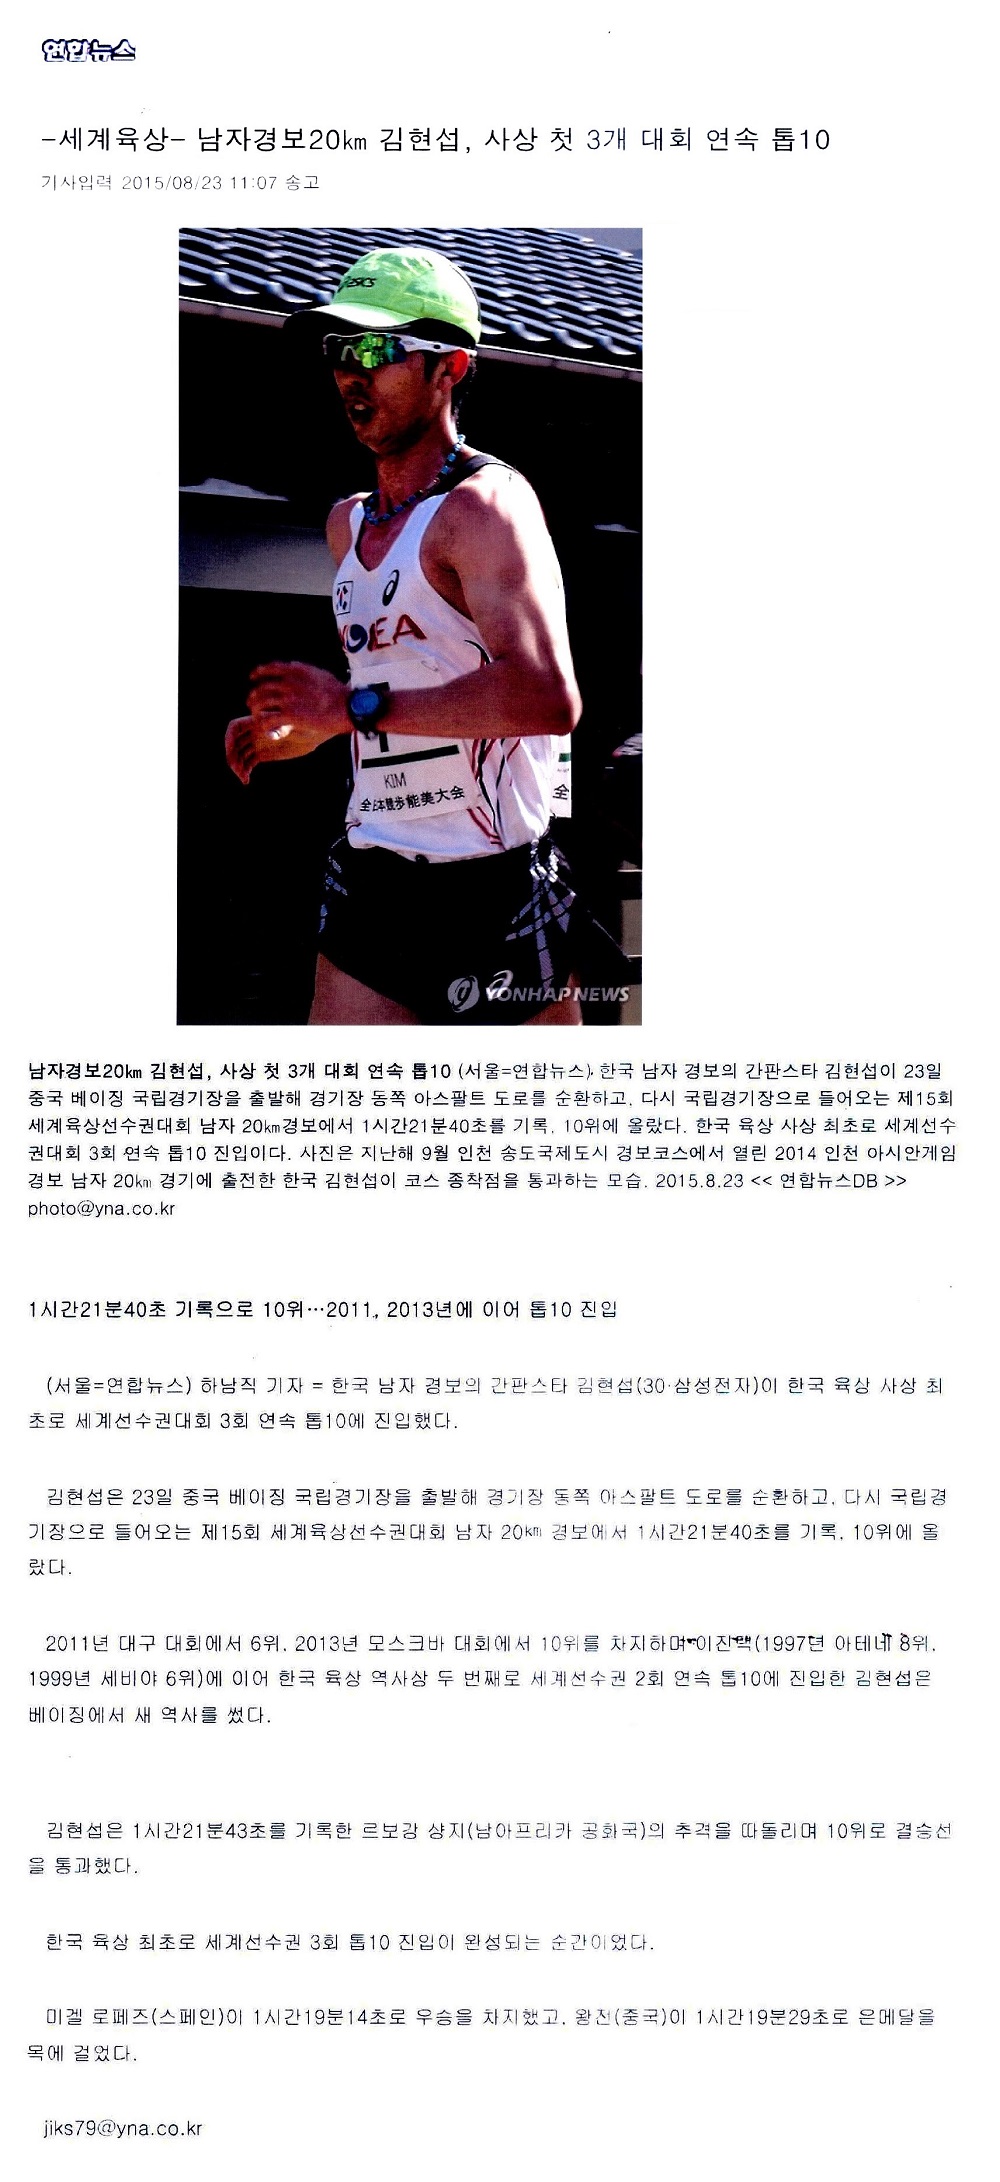 -세계육상- 남자경보20km 김현섭, 사상 첫 3개 대회 연속 톱10